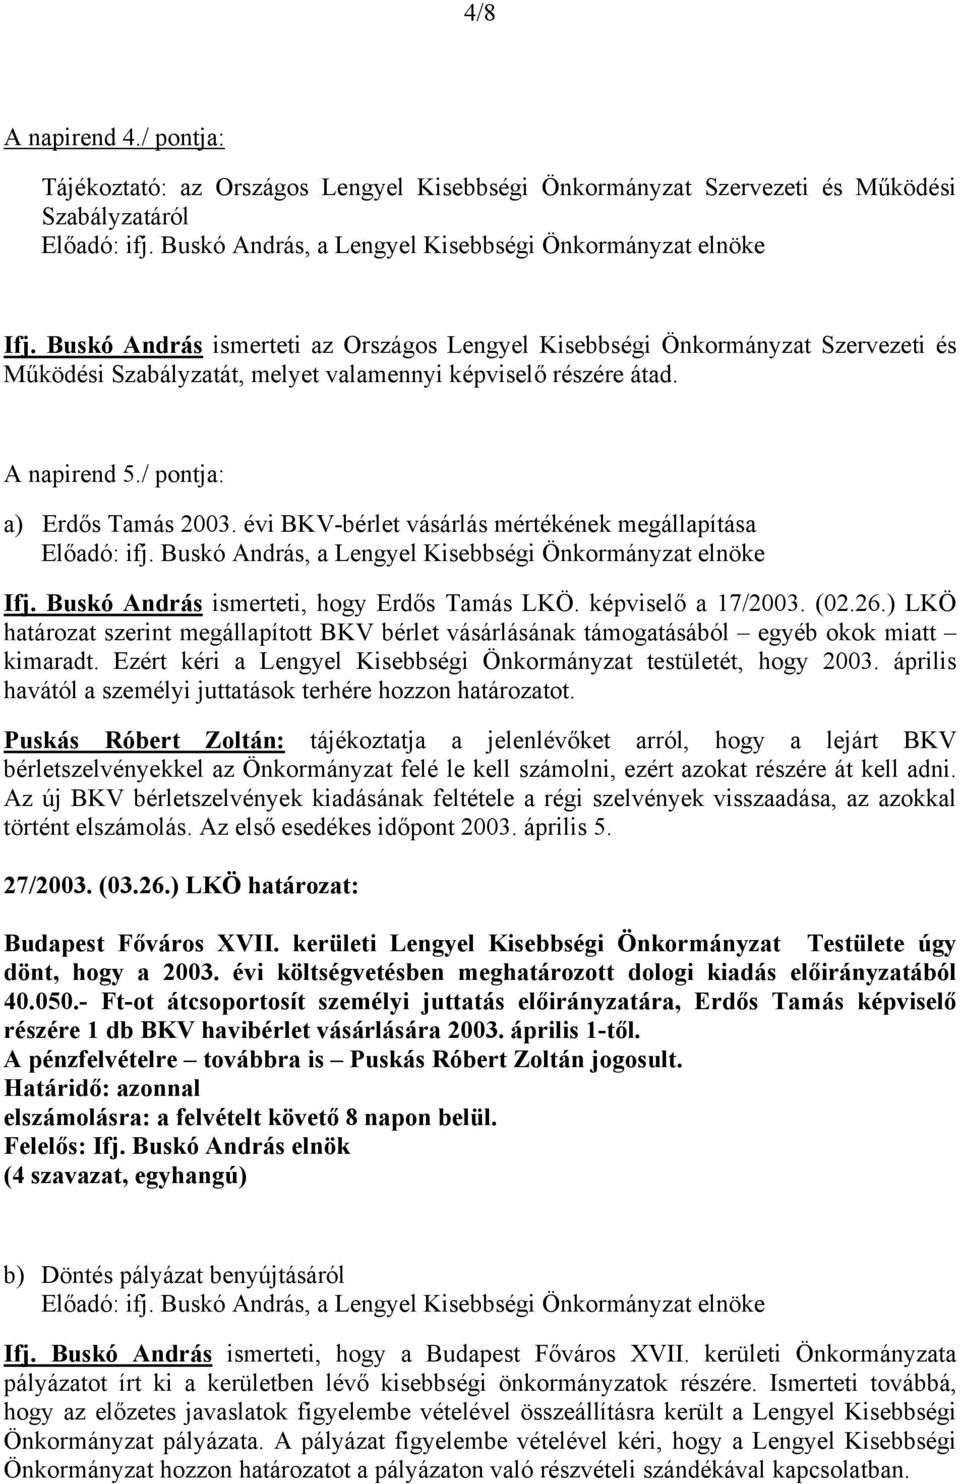 évi BKV-bérlet vásárlás mértékének megállapítása Ifj. Buskó András ismerteti, hogy Erdős Tamás LKÖ. képviselő a 17/2003. (02.26.